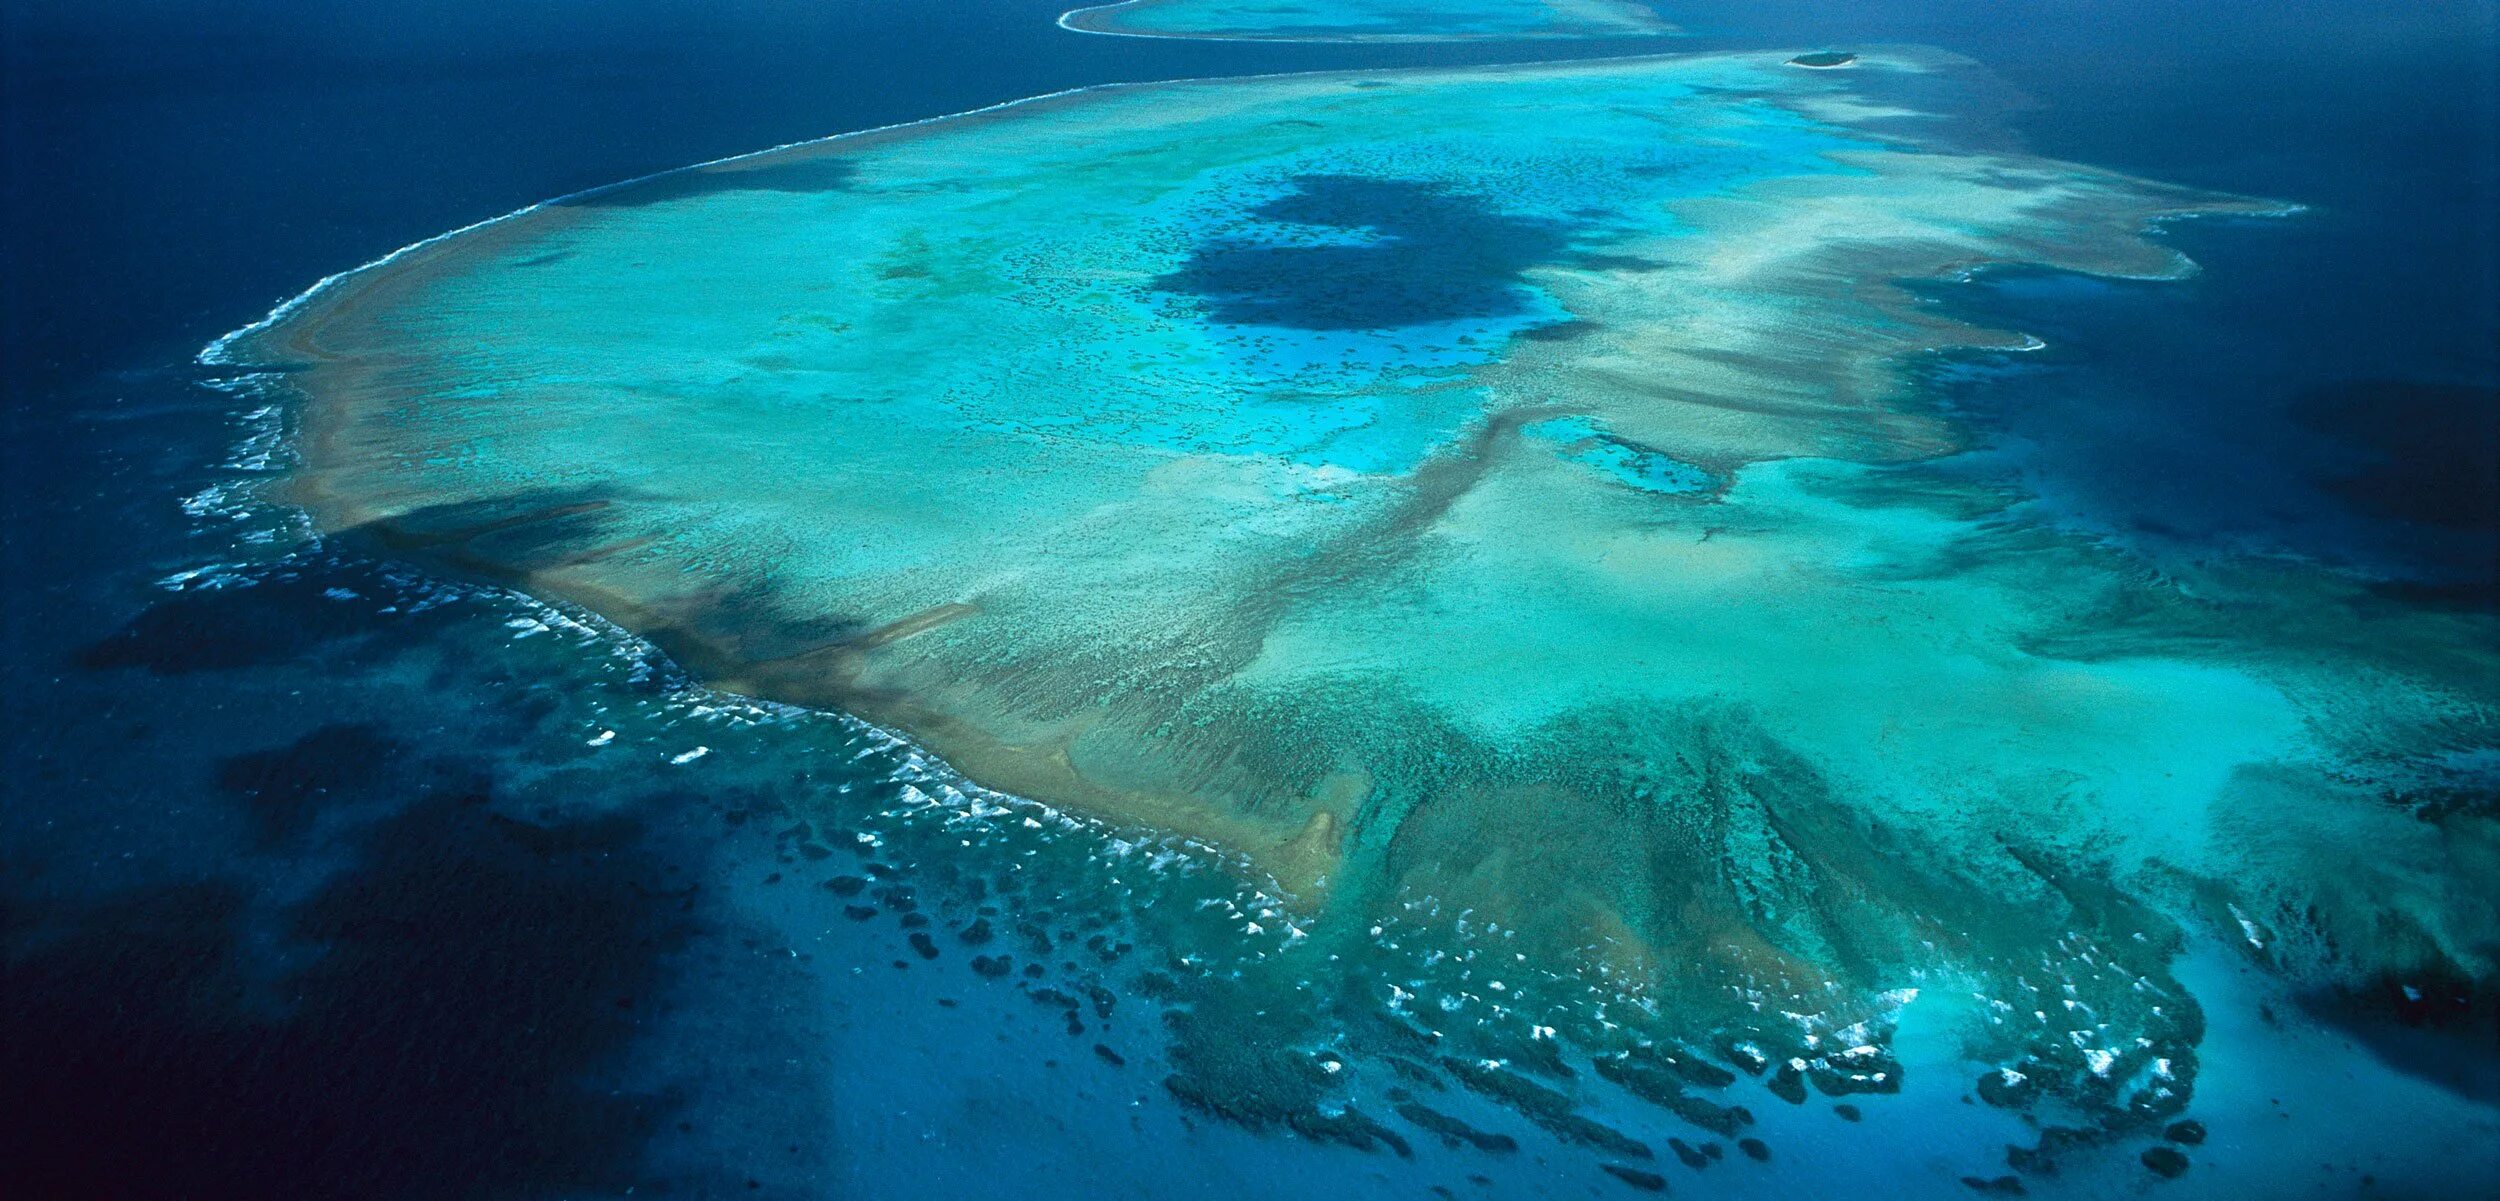 Острова большого барьерного рифа. Барьерный риф в Австралии. Большой Барьерный риф остров Хайман. Great Barrier Reef, Australia большой Барьерный риф, Австралия. Крупный остров на северо востоке австралии